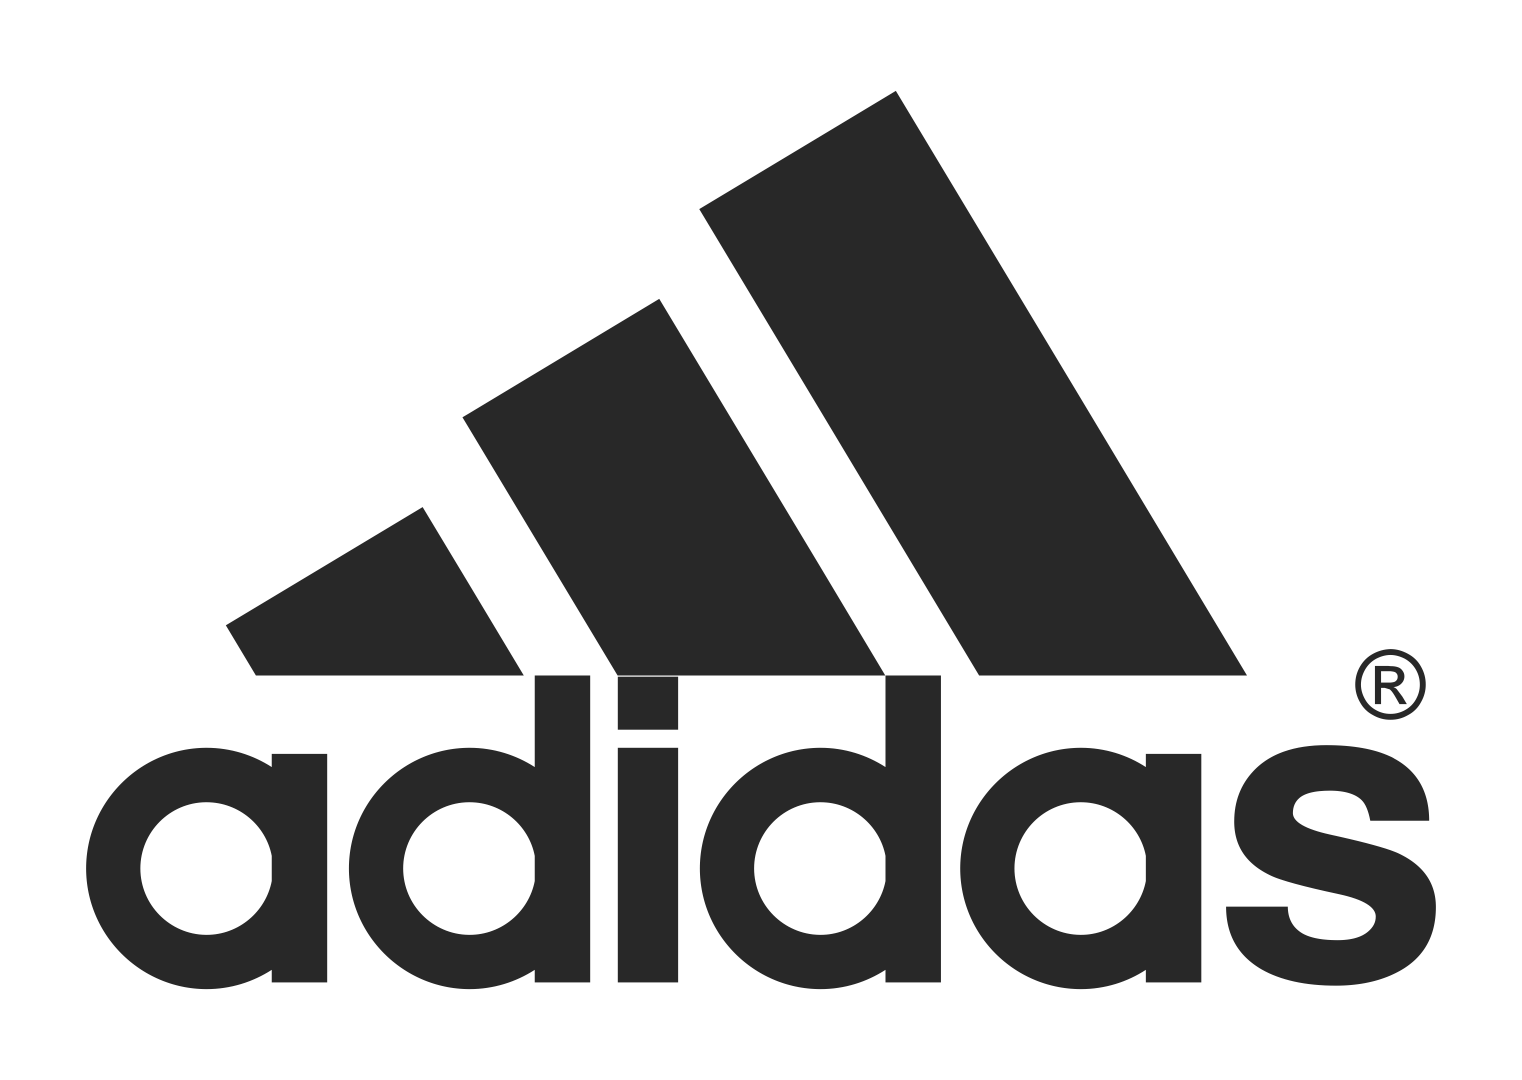 black adidas logo png